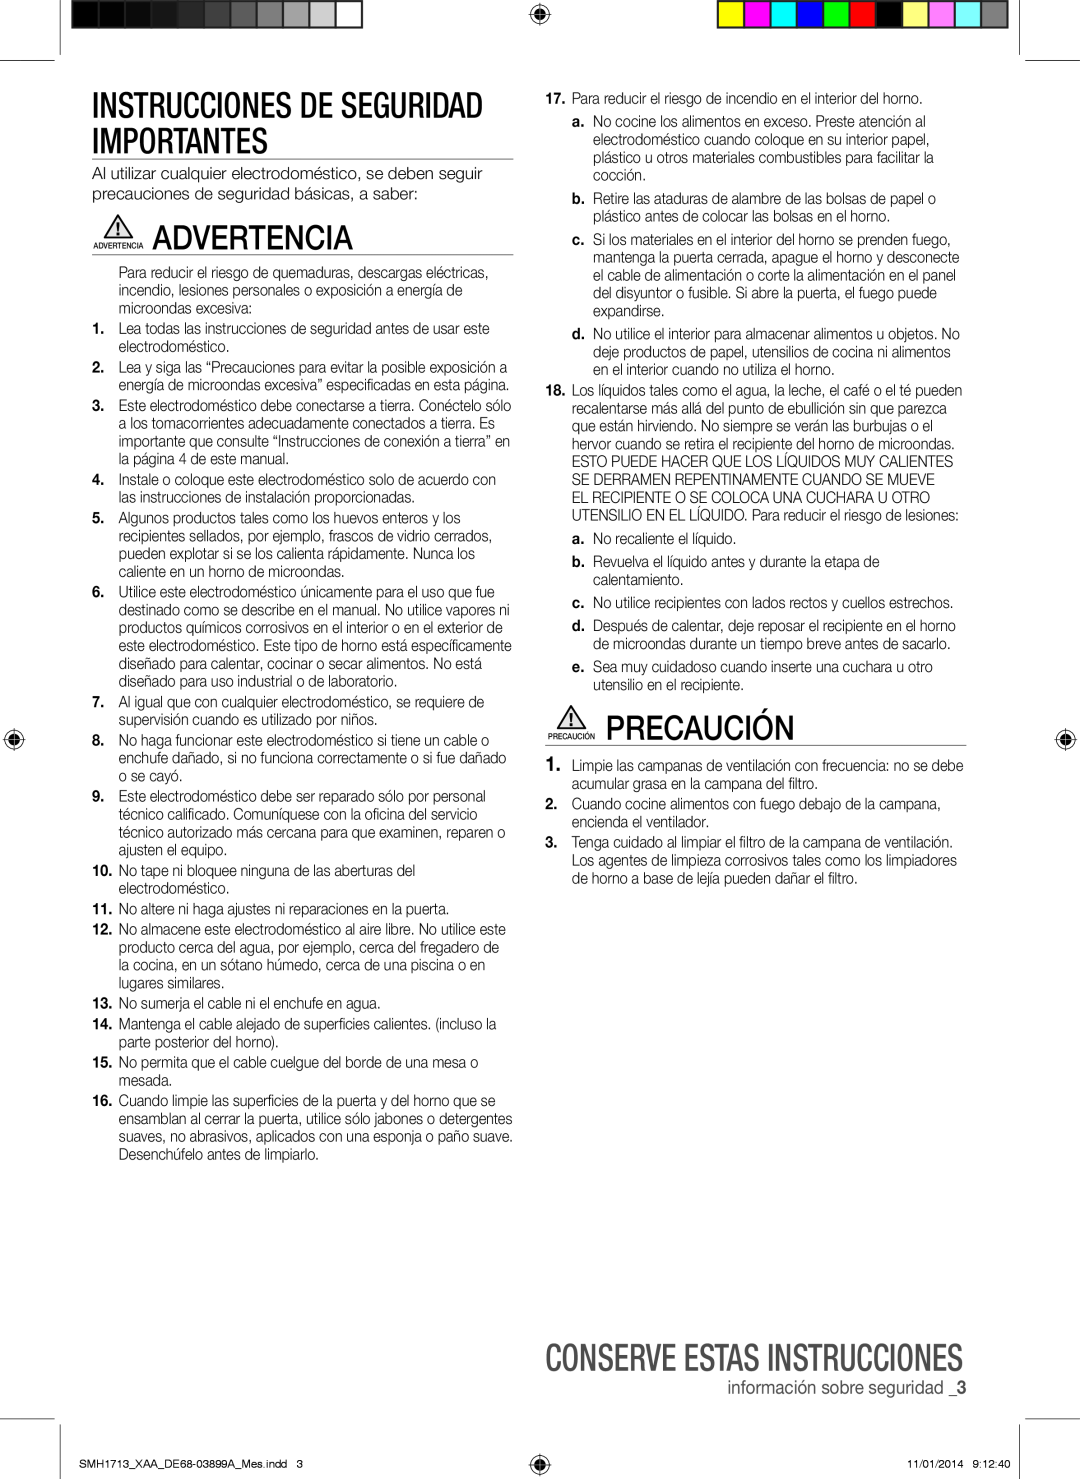 Samsung SMH1713 Instrucciones De Seguridad Importantes, Conserve estas instrucciones, información sobre seguridad 